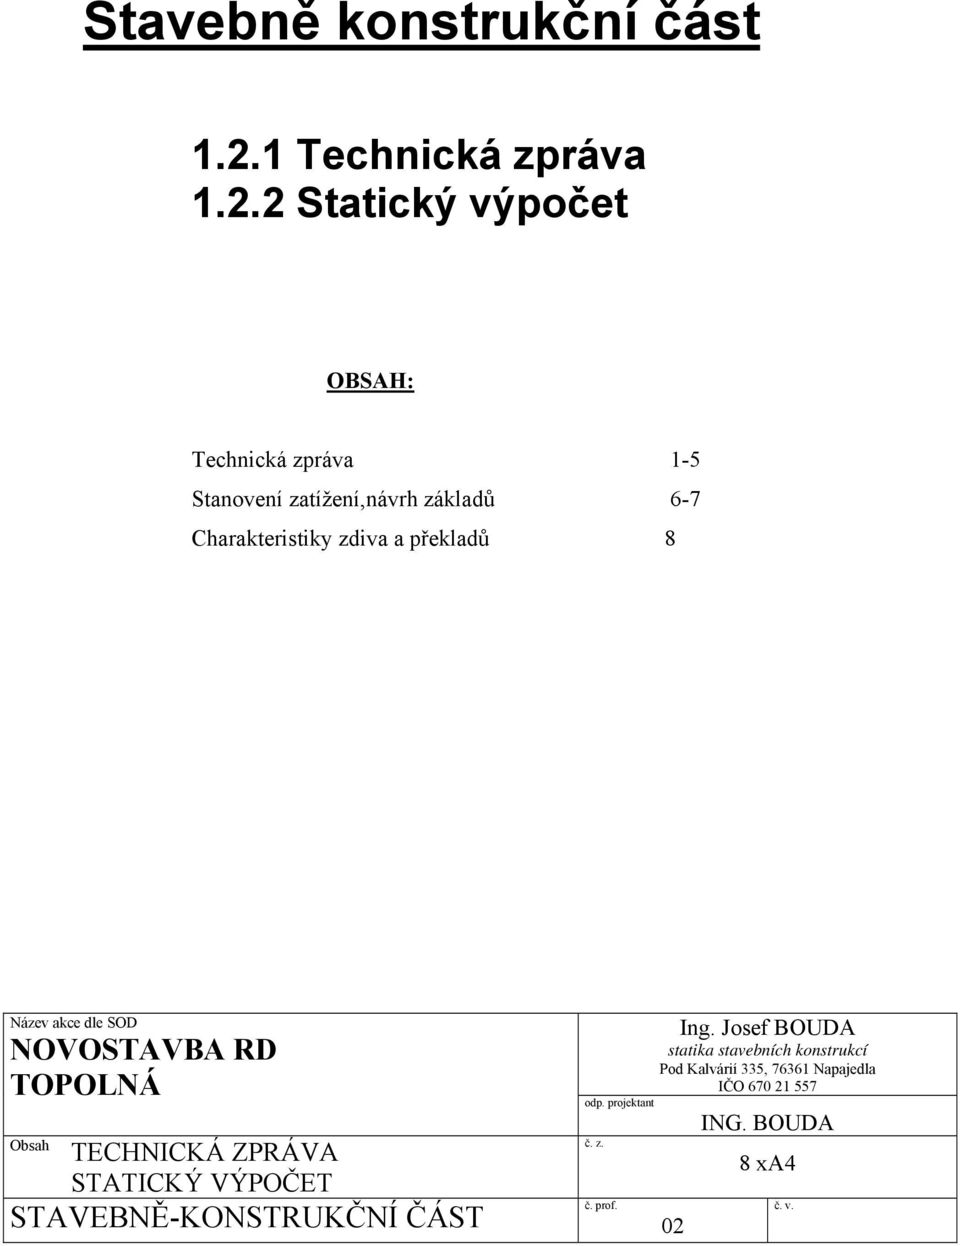 2 Statický výpočet OBSAH: Technická zpráva 1-5 Stanovení zatížení,návrh základů 6-7 Charakteristiky zdiva a